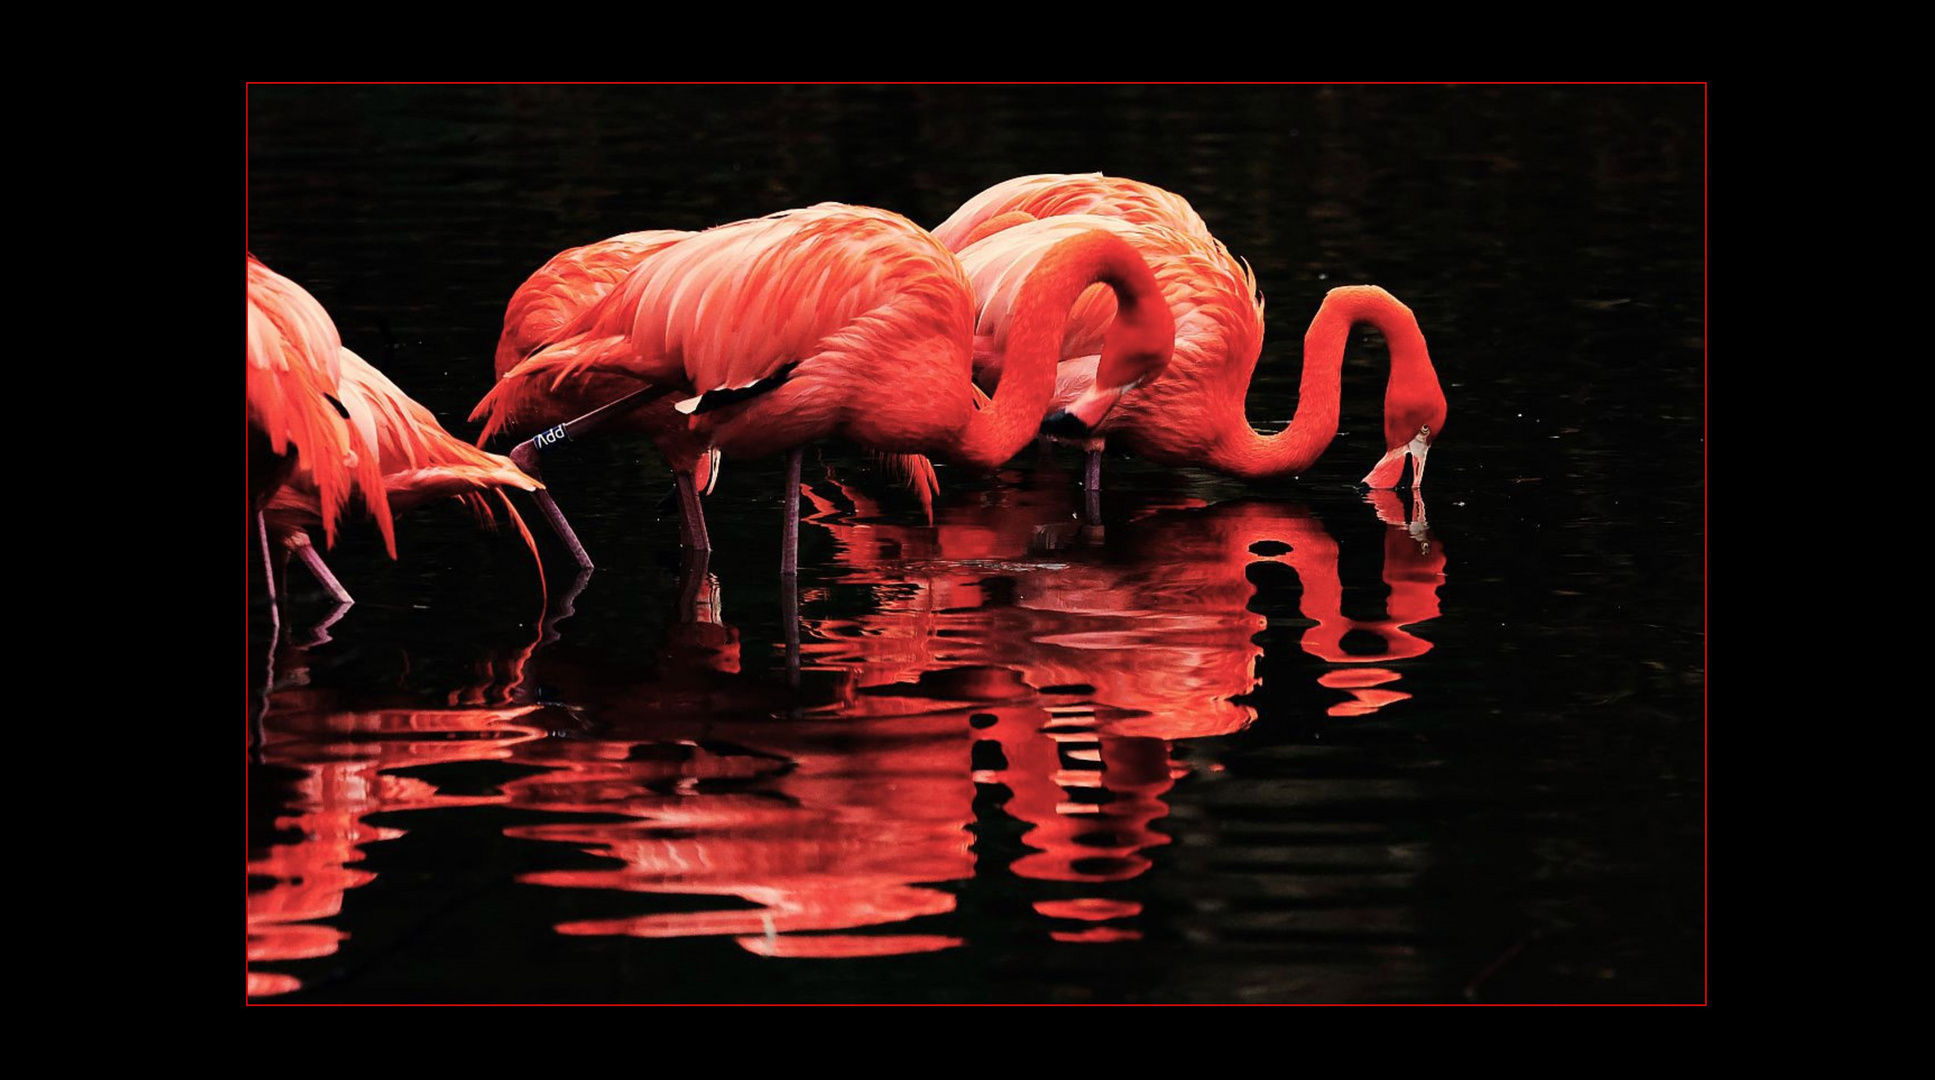 Flamingos im Winter